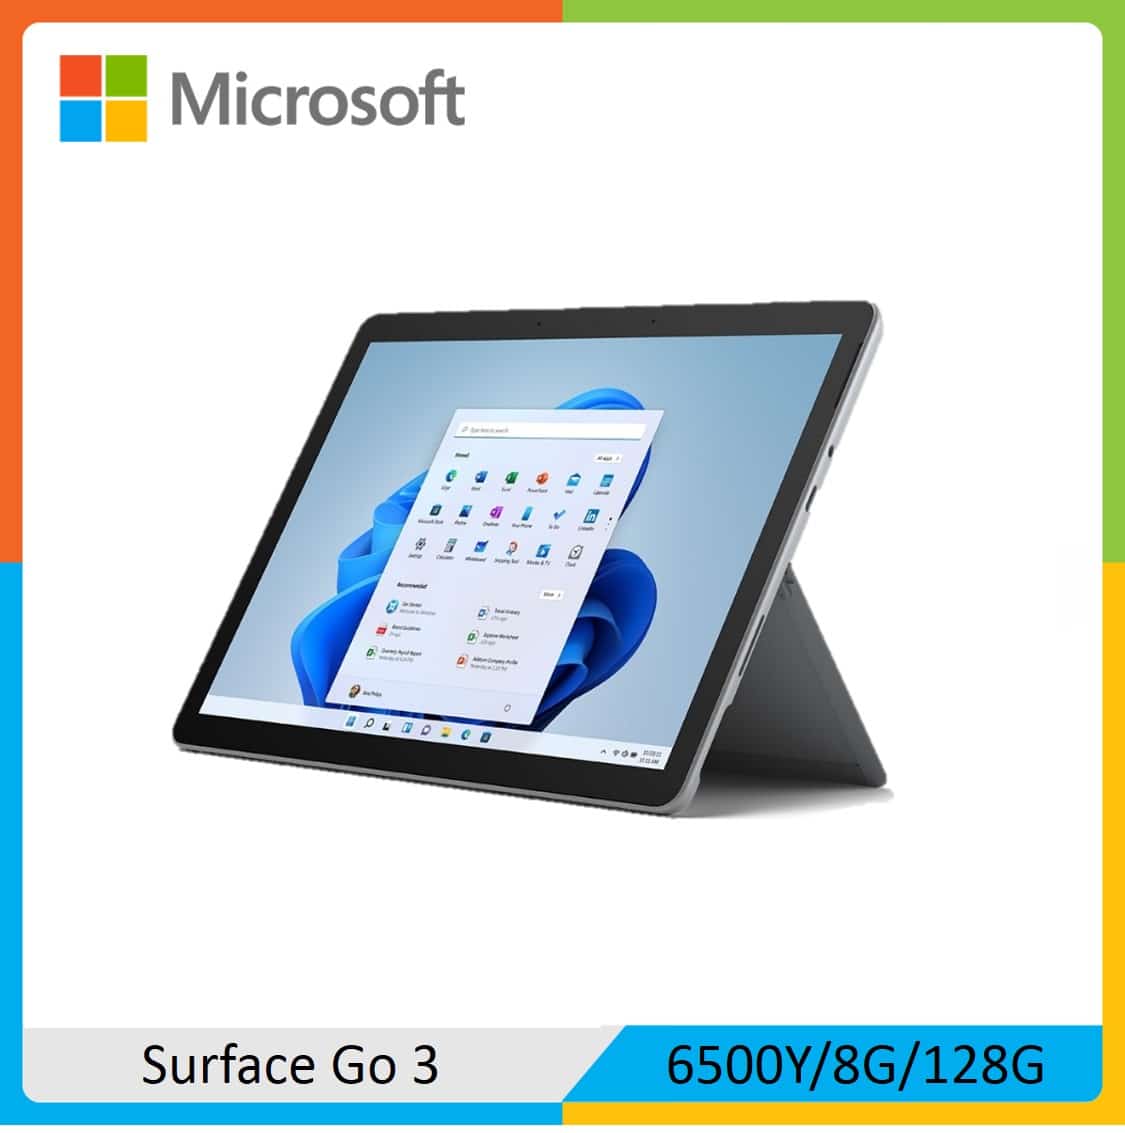 Microsoft 微軟 Surface Go 3 (6500Y/8G/128G) 白金